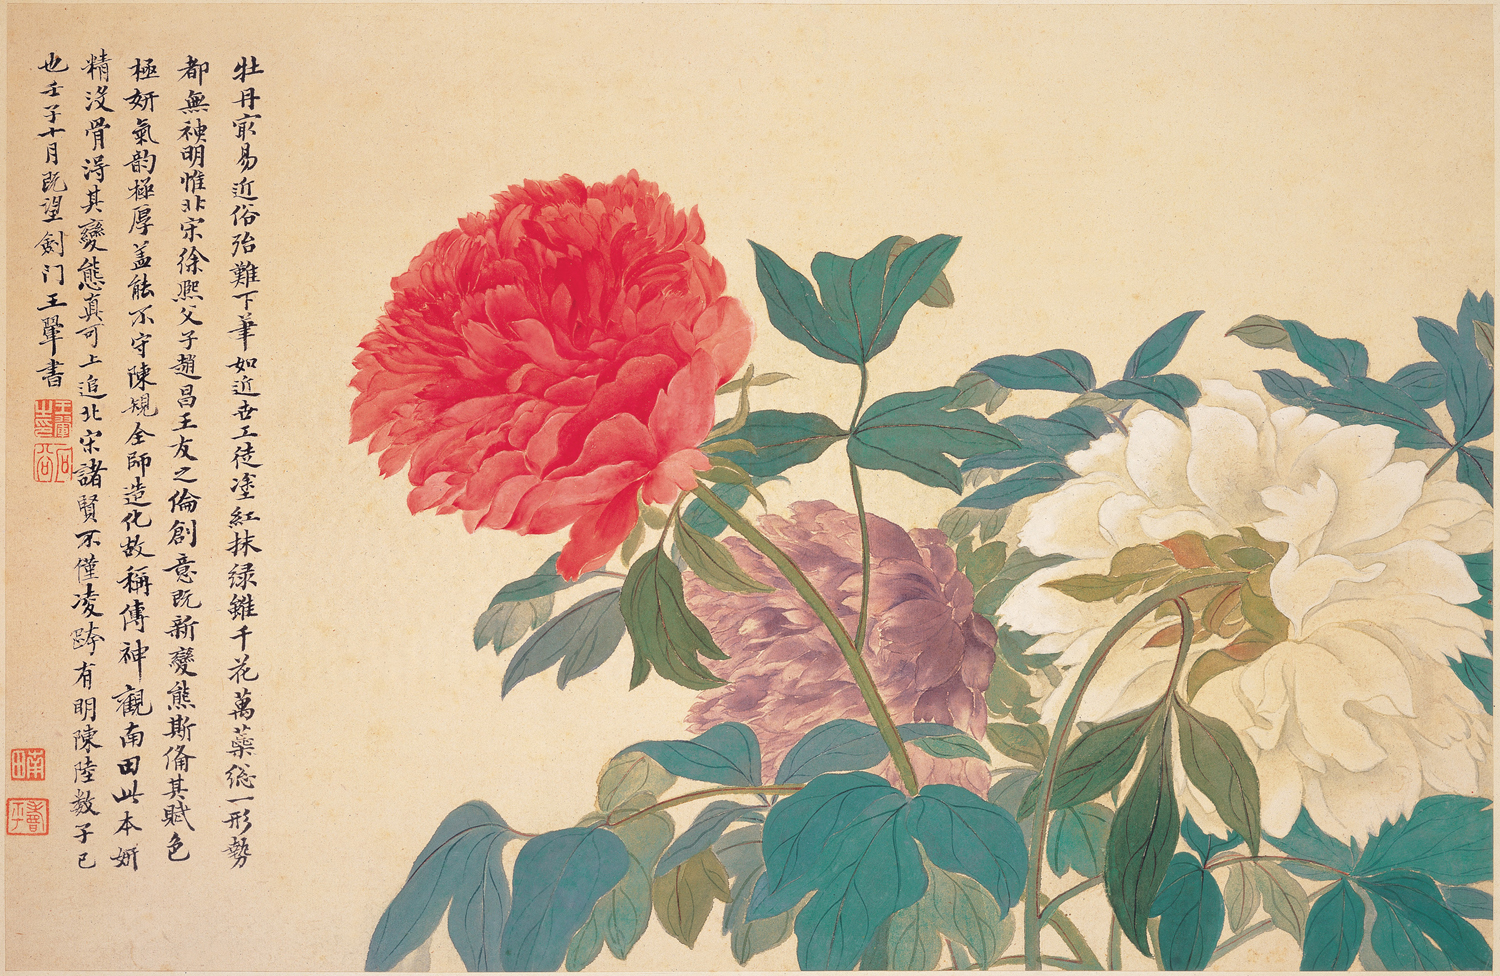 Peonies by Yun Shou-p'ing - 1672 - 28.5 x 43.0 cm National Palace Museum, Taipei